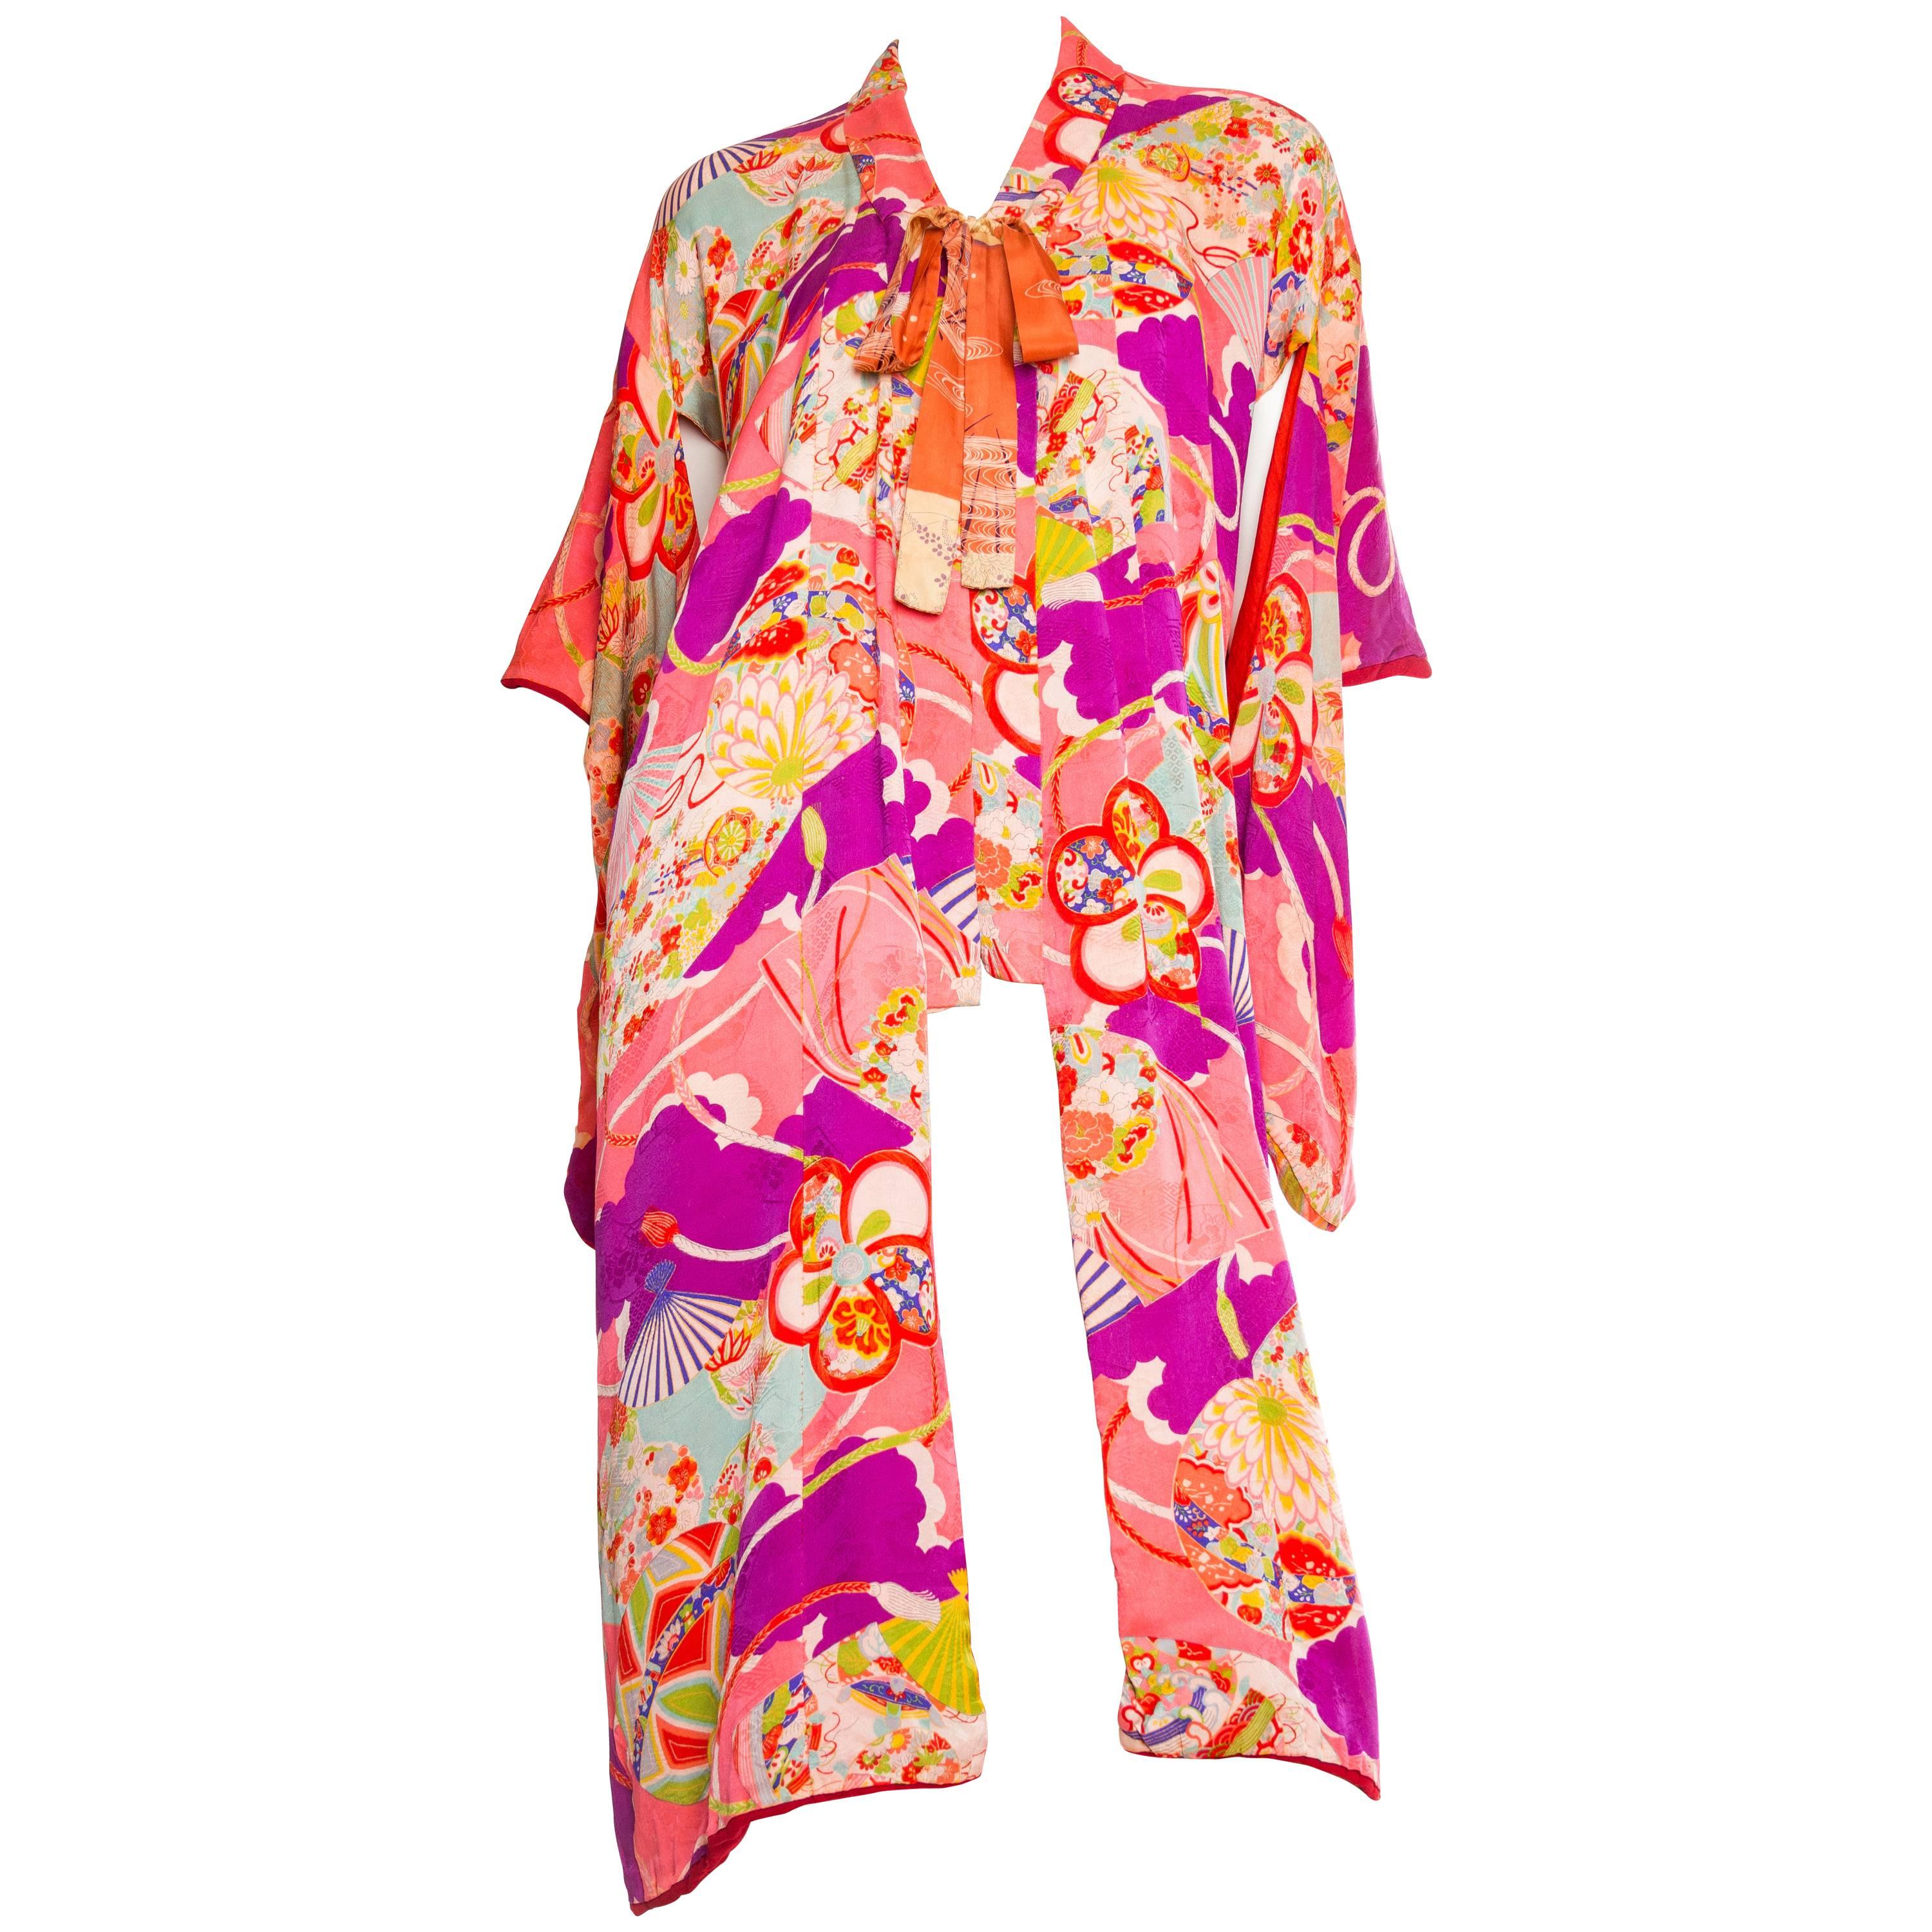 Bright 1940s Printed Kimono